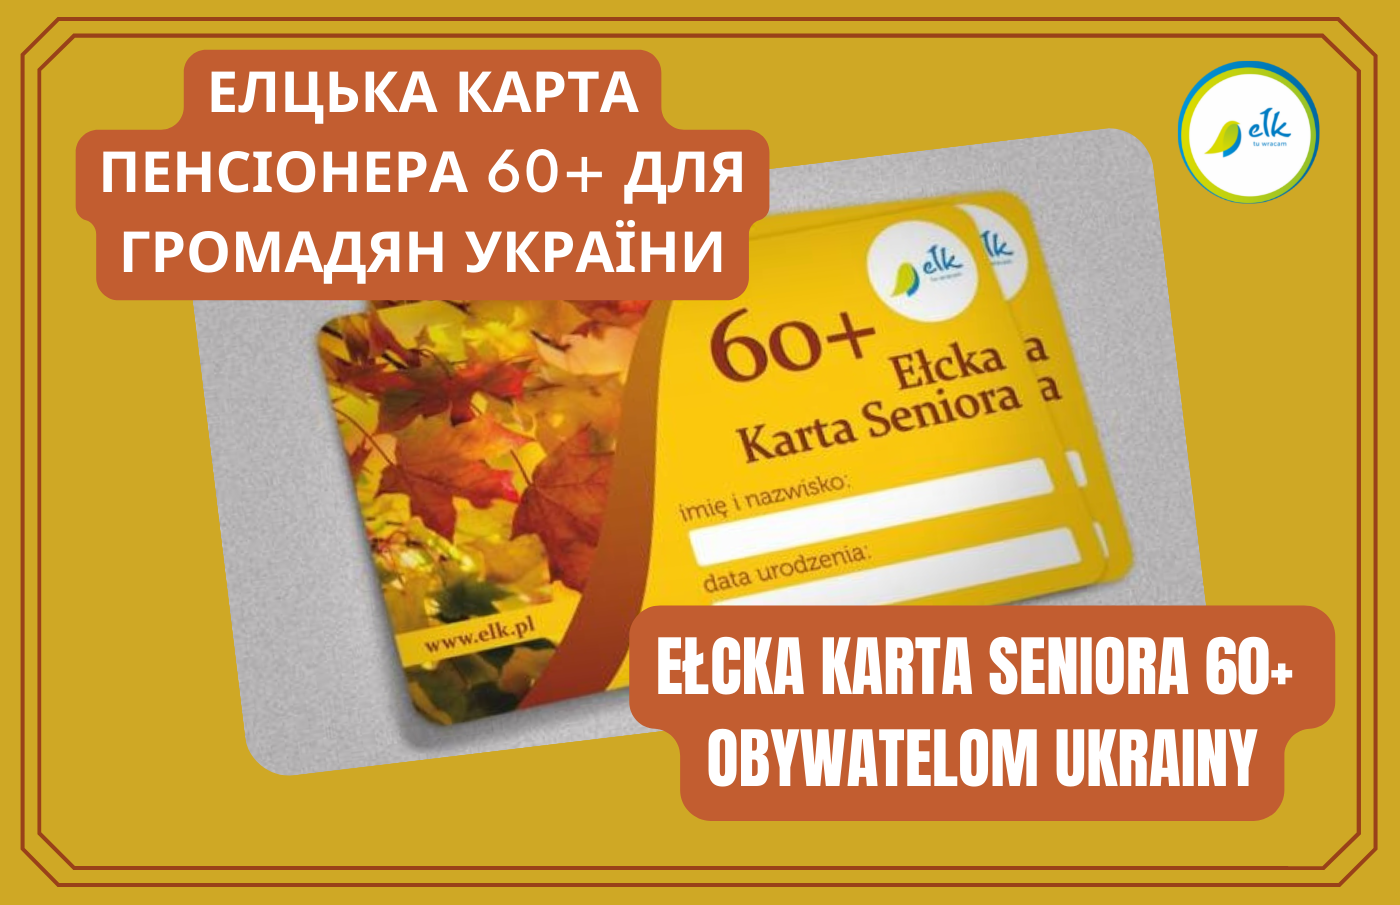 Ełcka Karta Seniora 60+ obywatelom Ukrainy